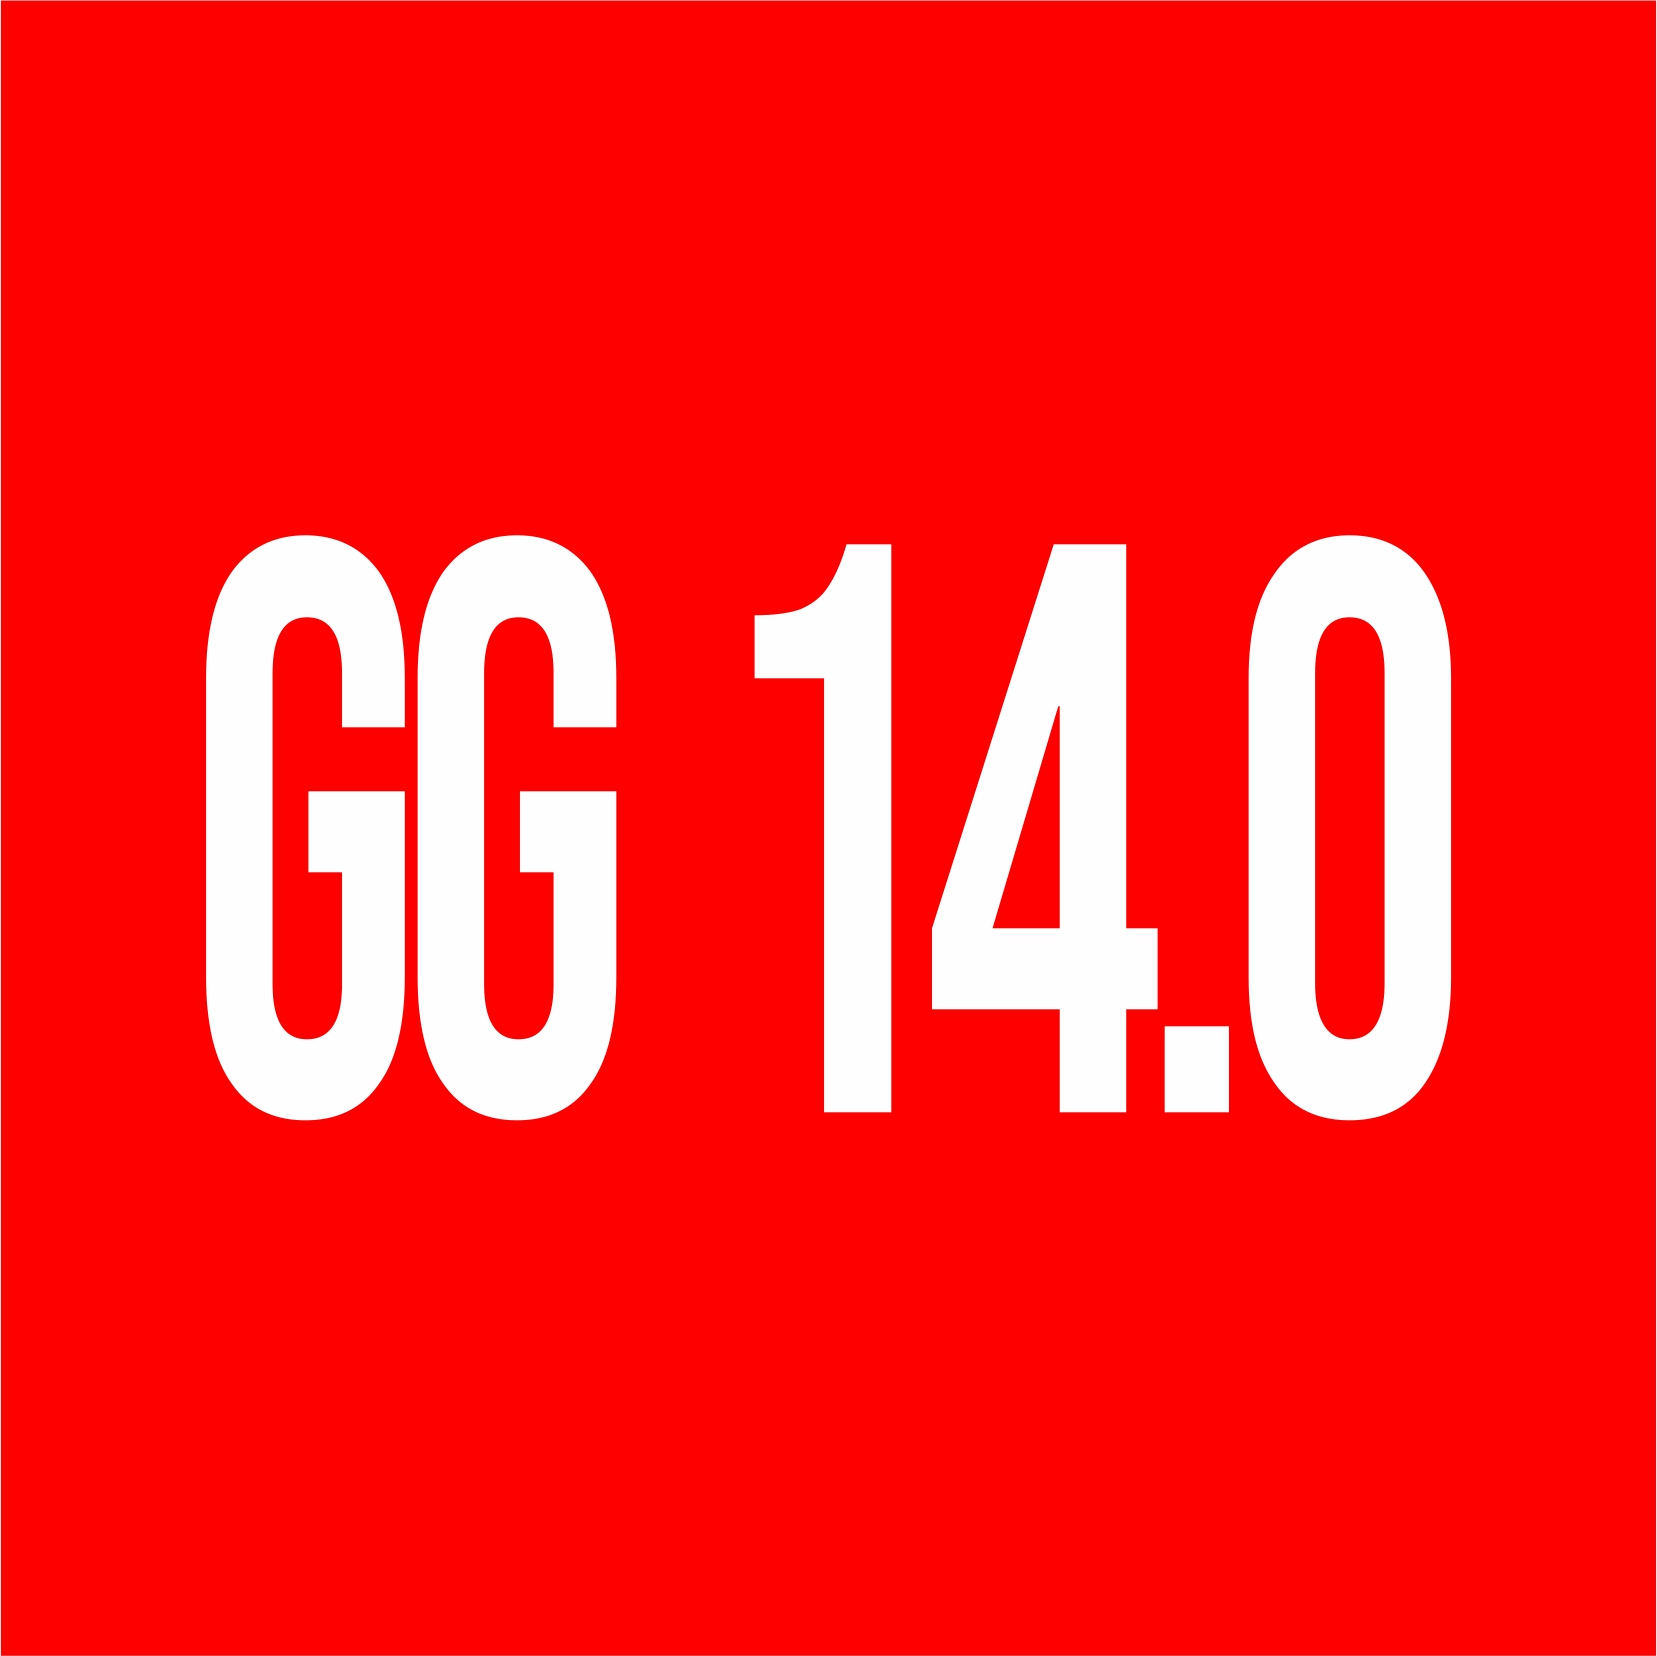 gg - Logotipo GG 14.0